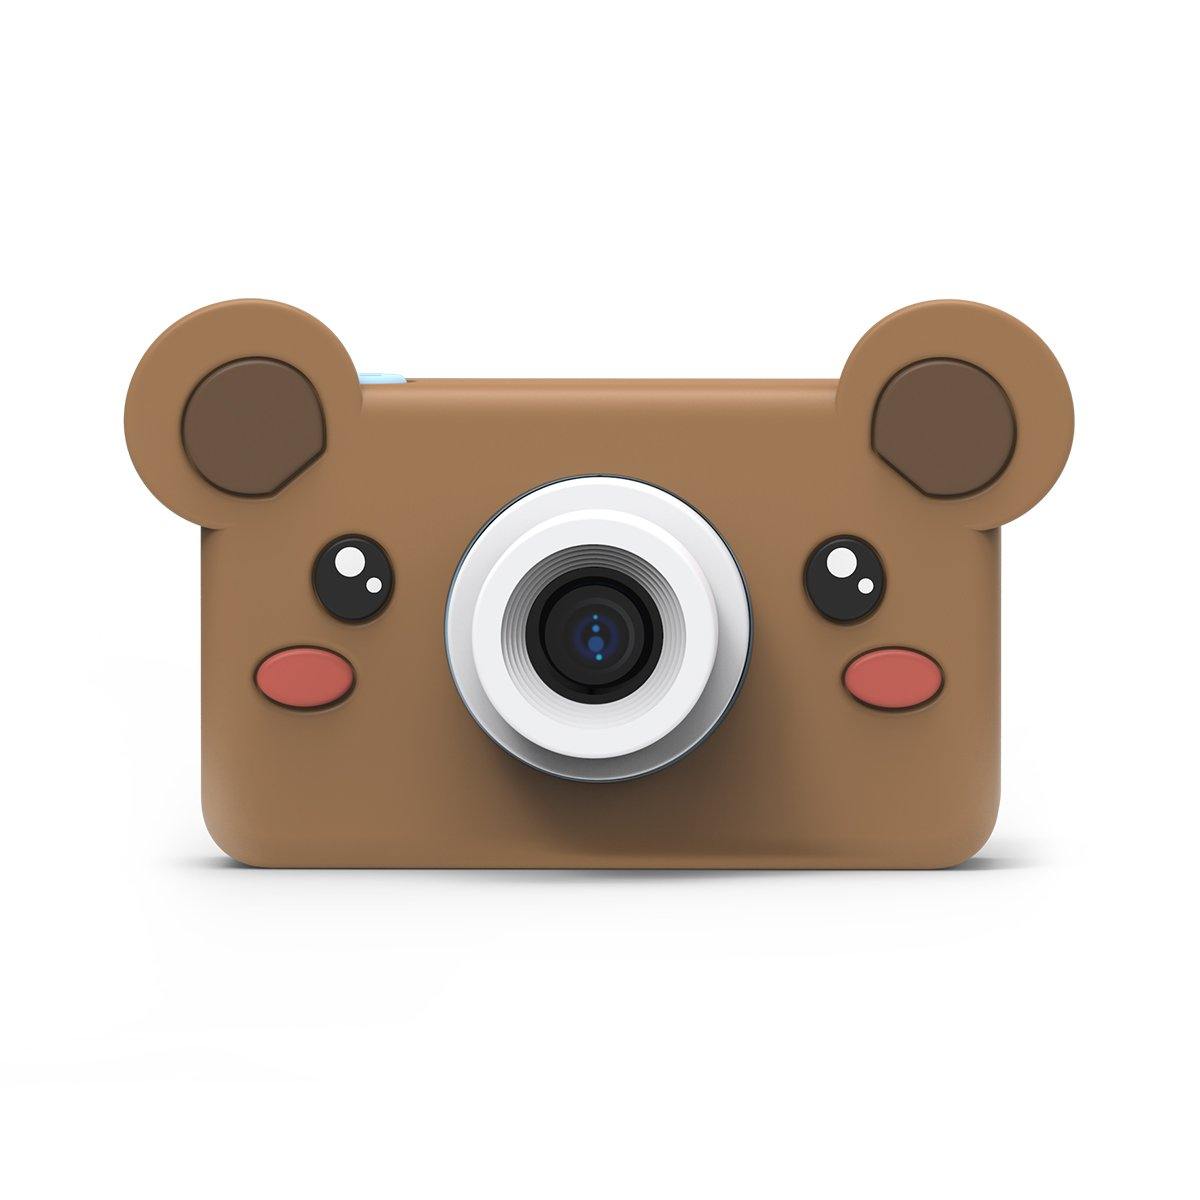 Bear Kids Camera – The Zoofamily